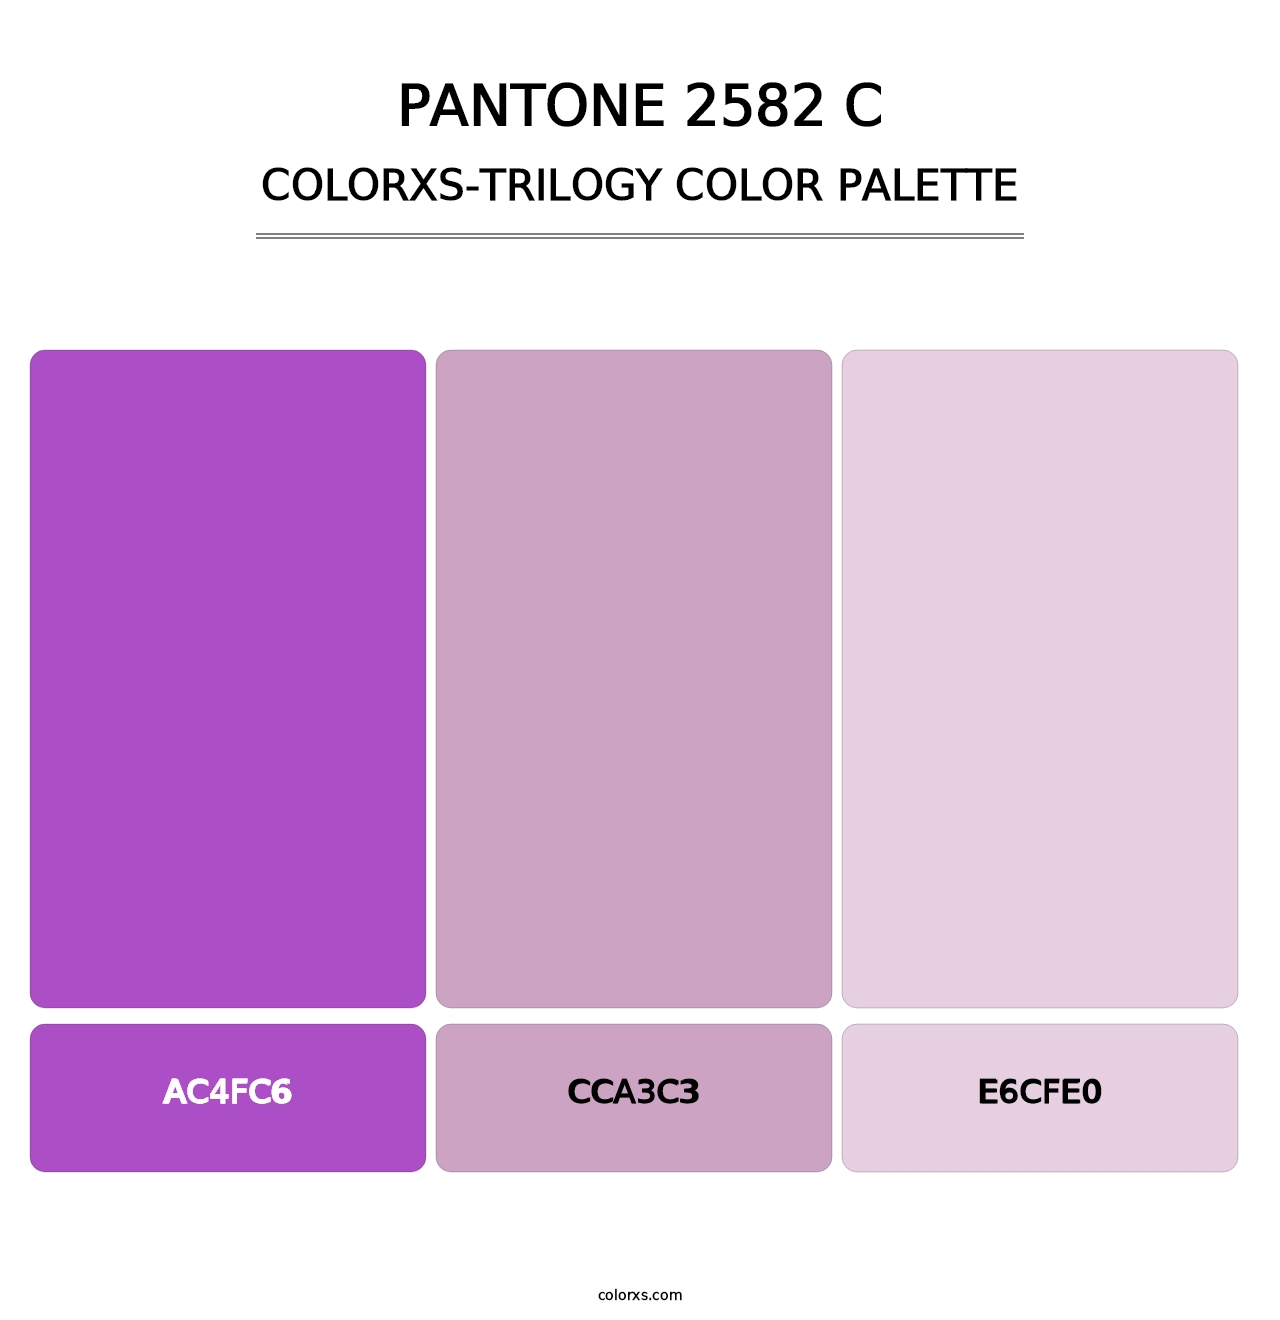 PANTONE 2582 C - Colorxs Trilogy Palette